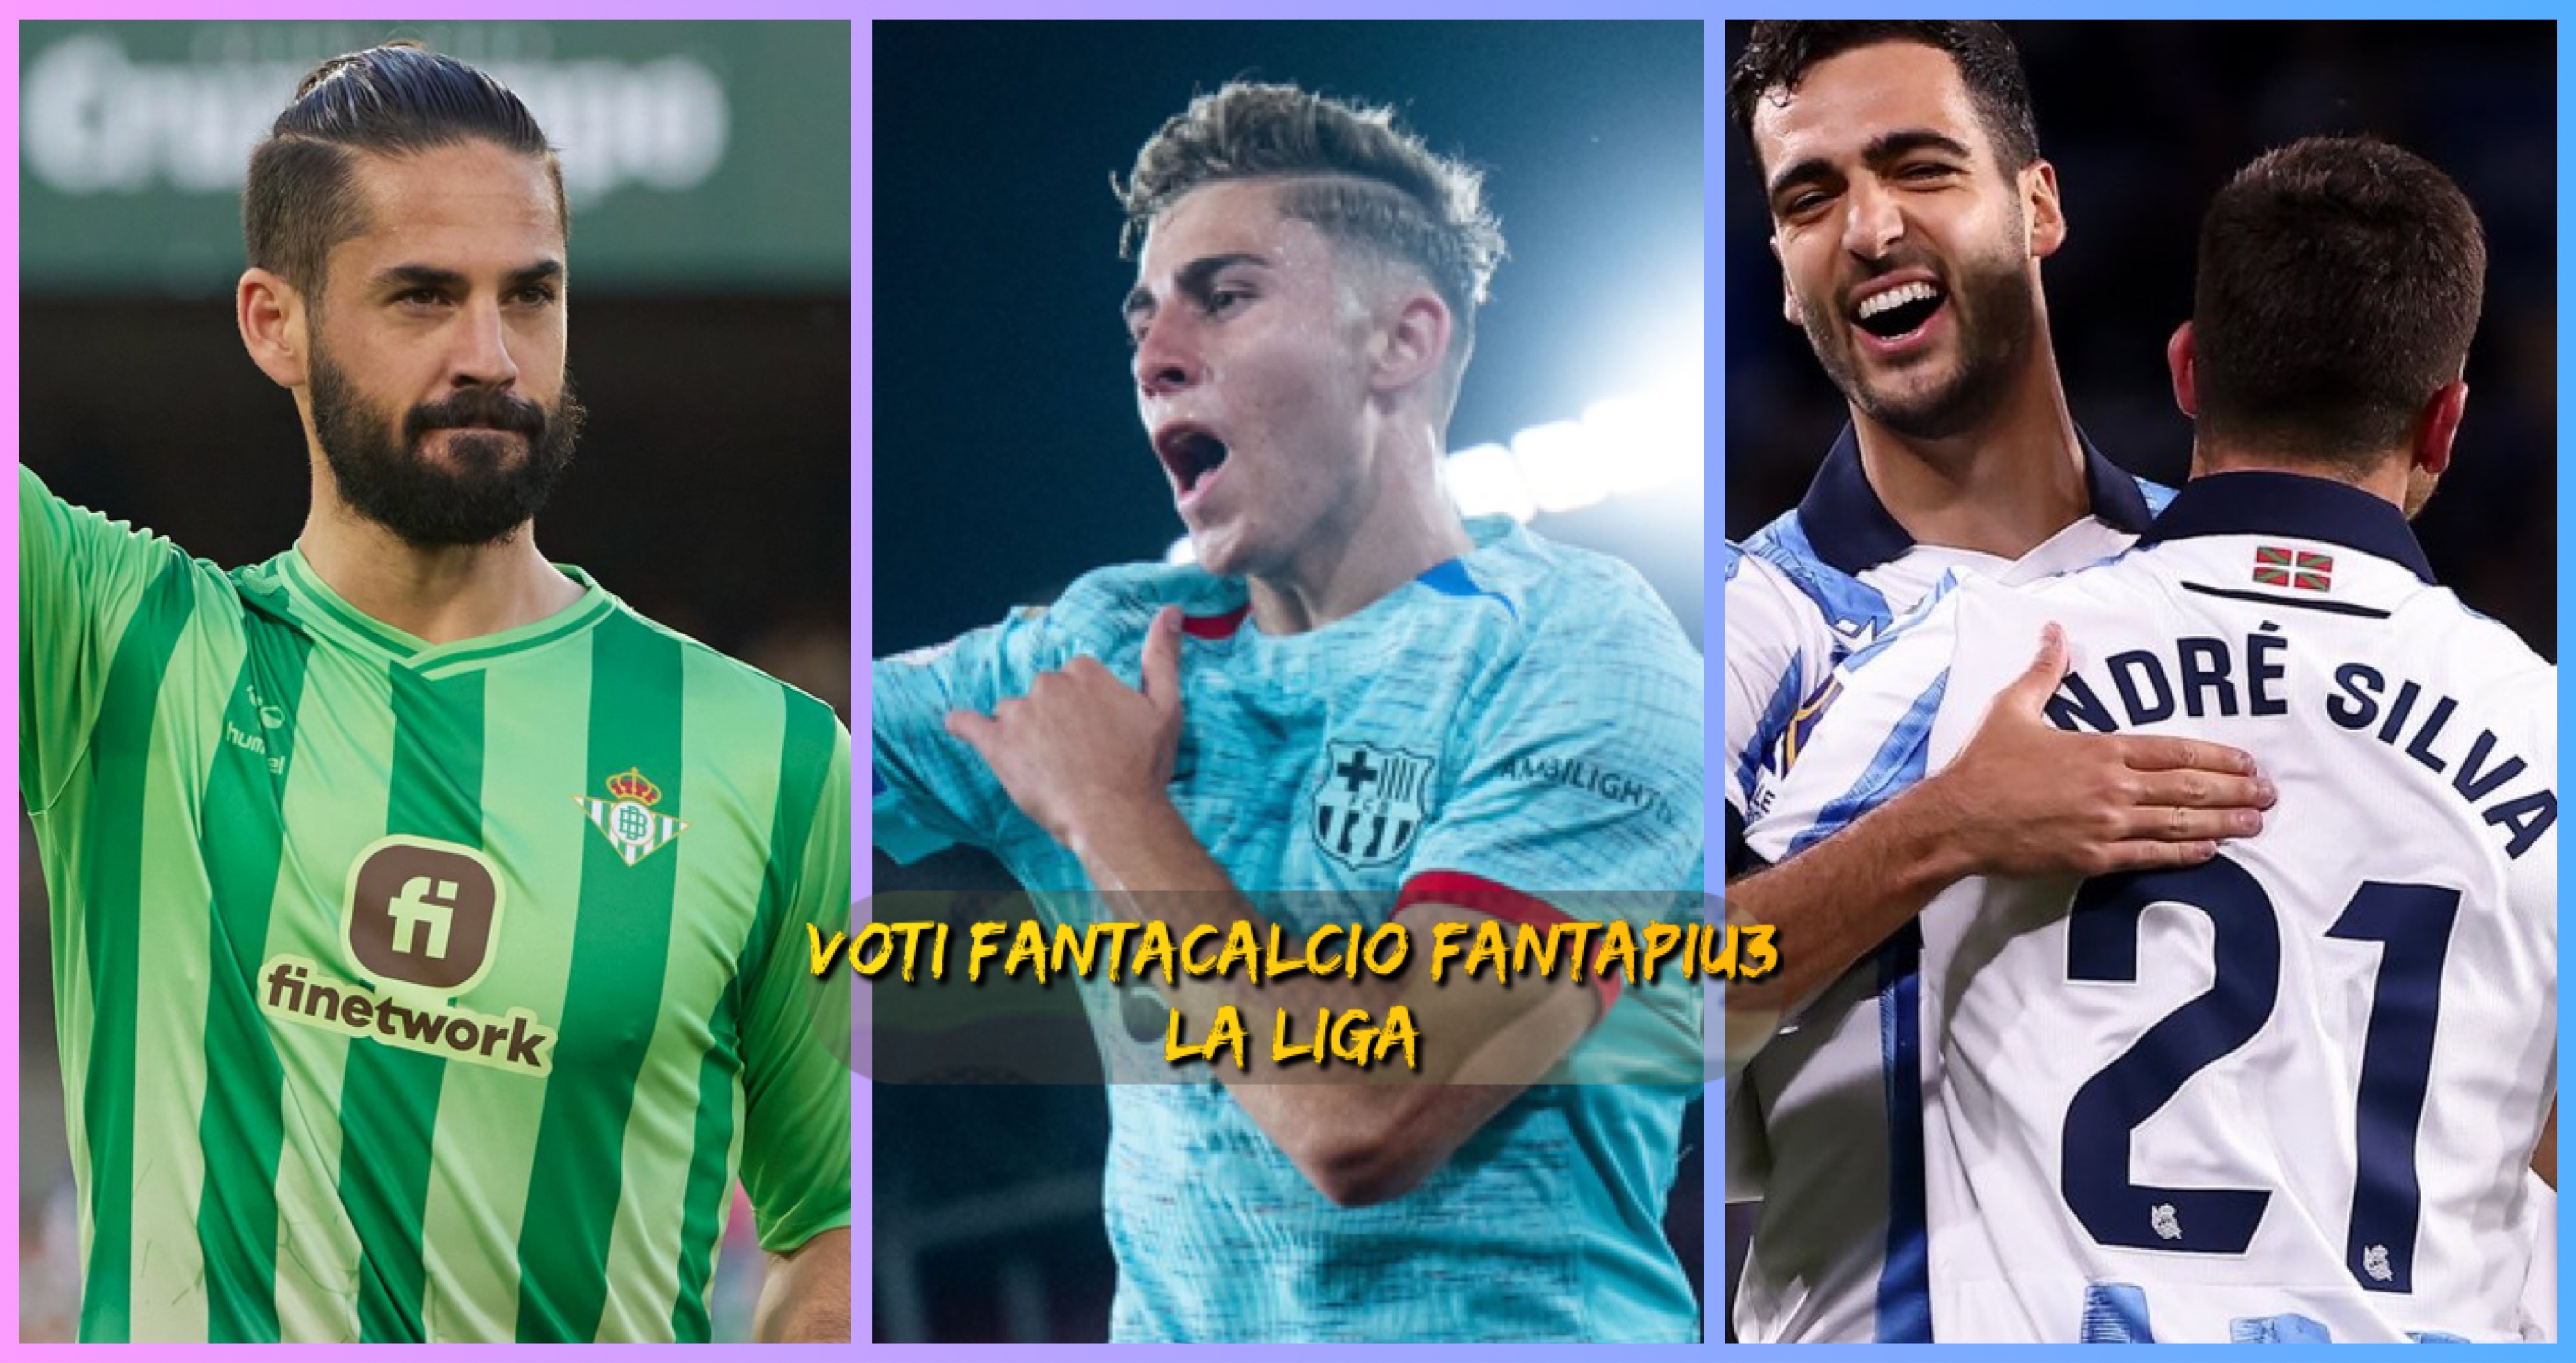 Voti fantacalcio Fantapiu3 La Liga